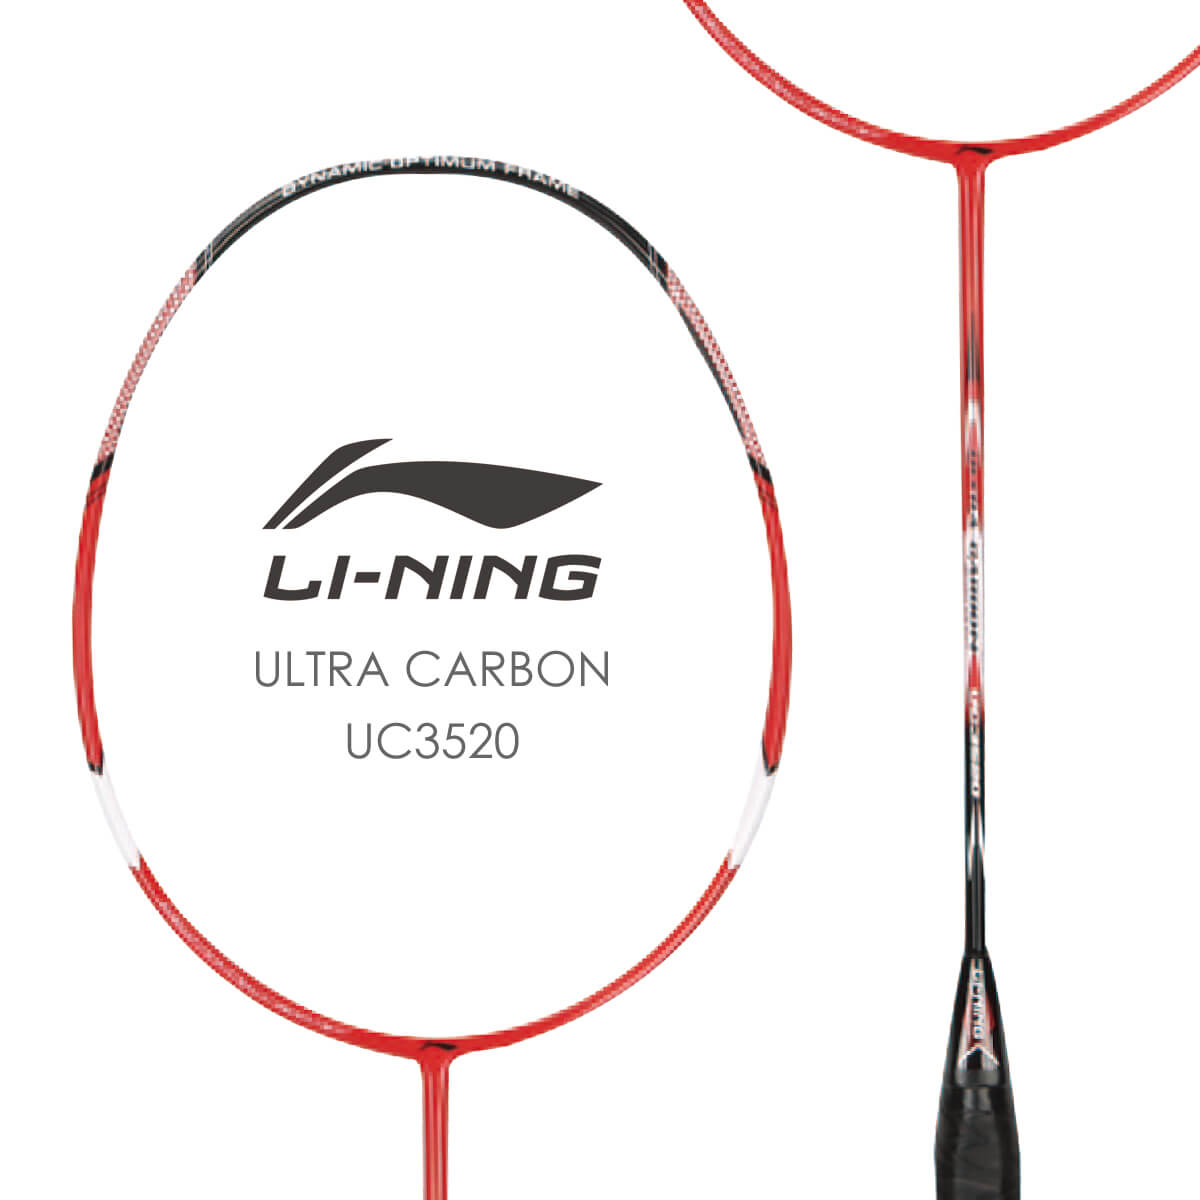 LI-NING UC3520(AYPE130) ULTRA CARBON バドミントンラケット リーニン【オススメガット&ガット張り工賃無料】 1